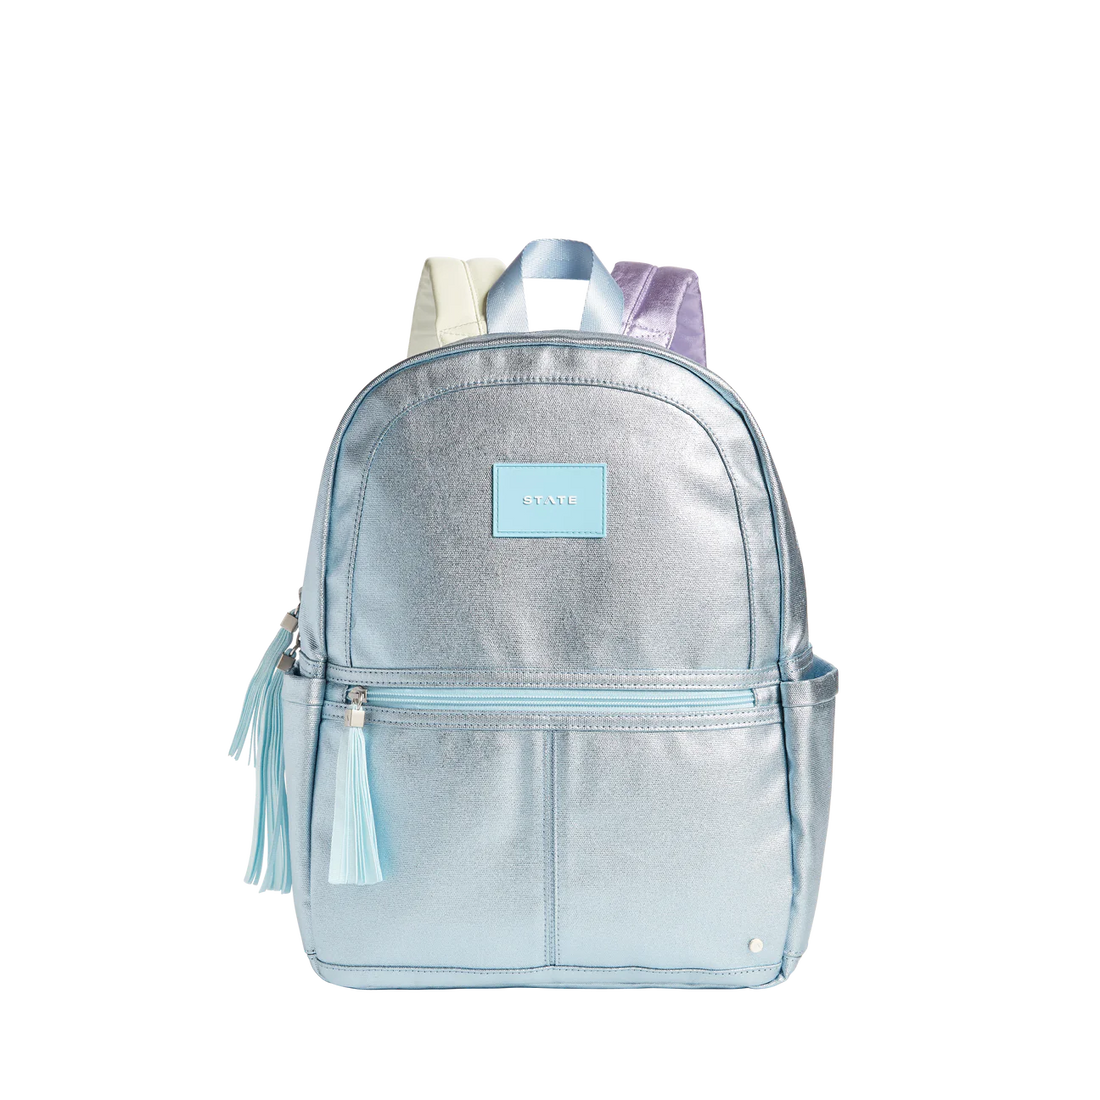 kane kids blue metallic backpack